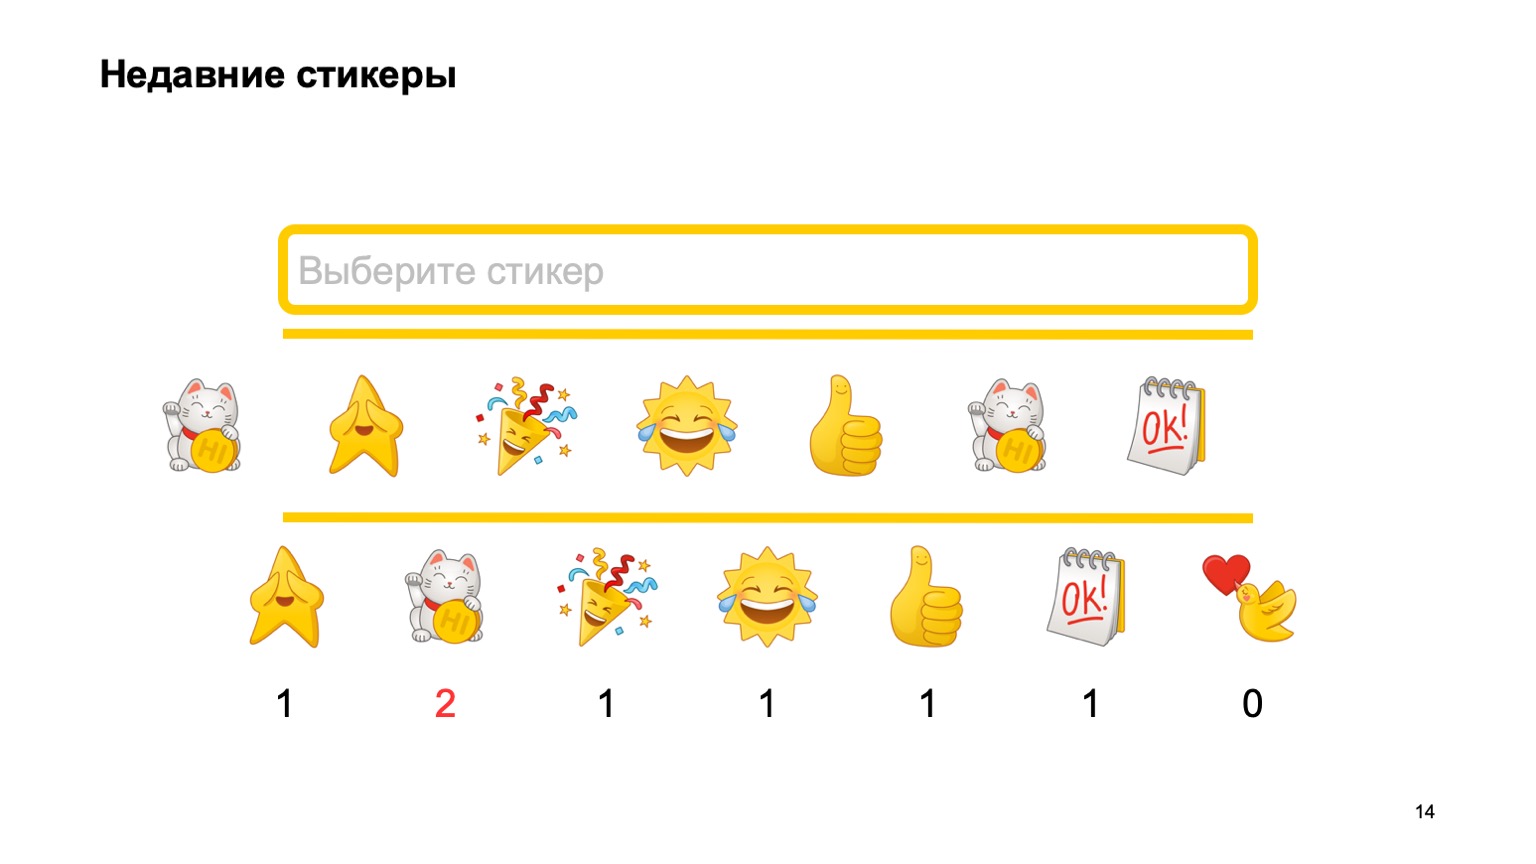 Мобильная разработка — это просто и скучно? Доклад Яндекса - 11